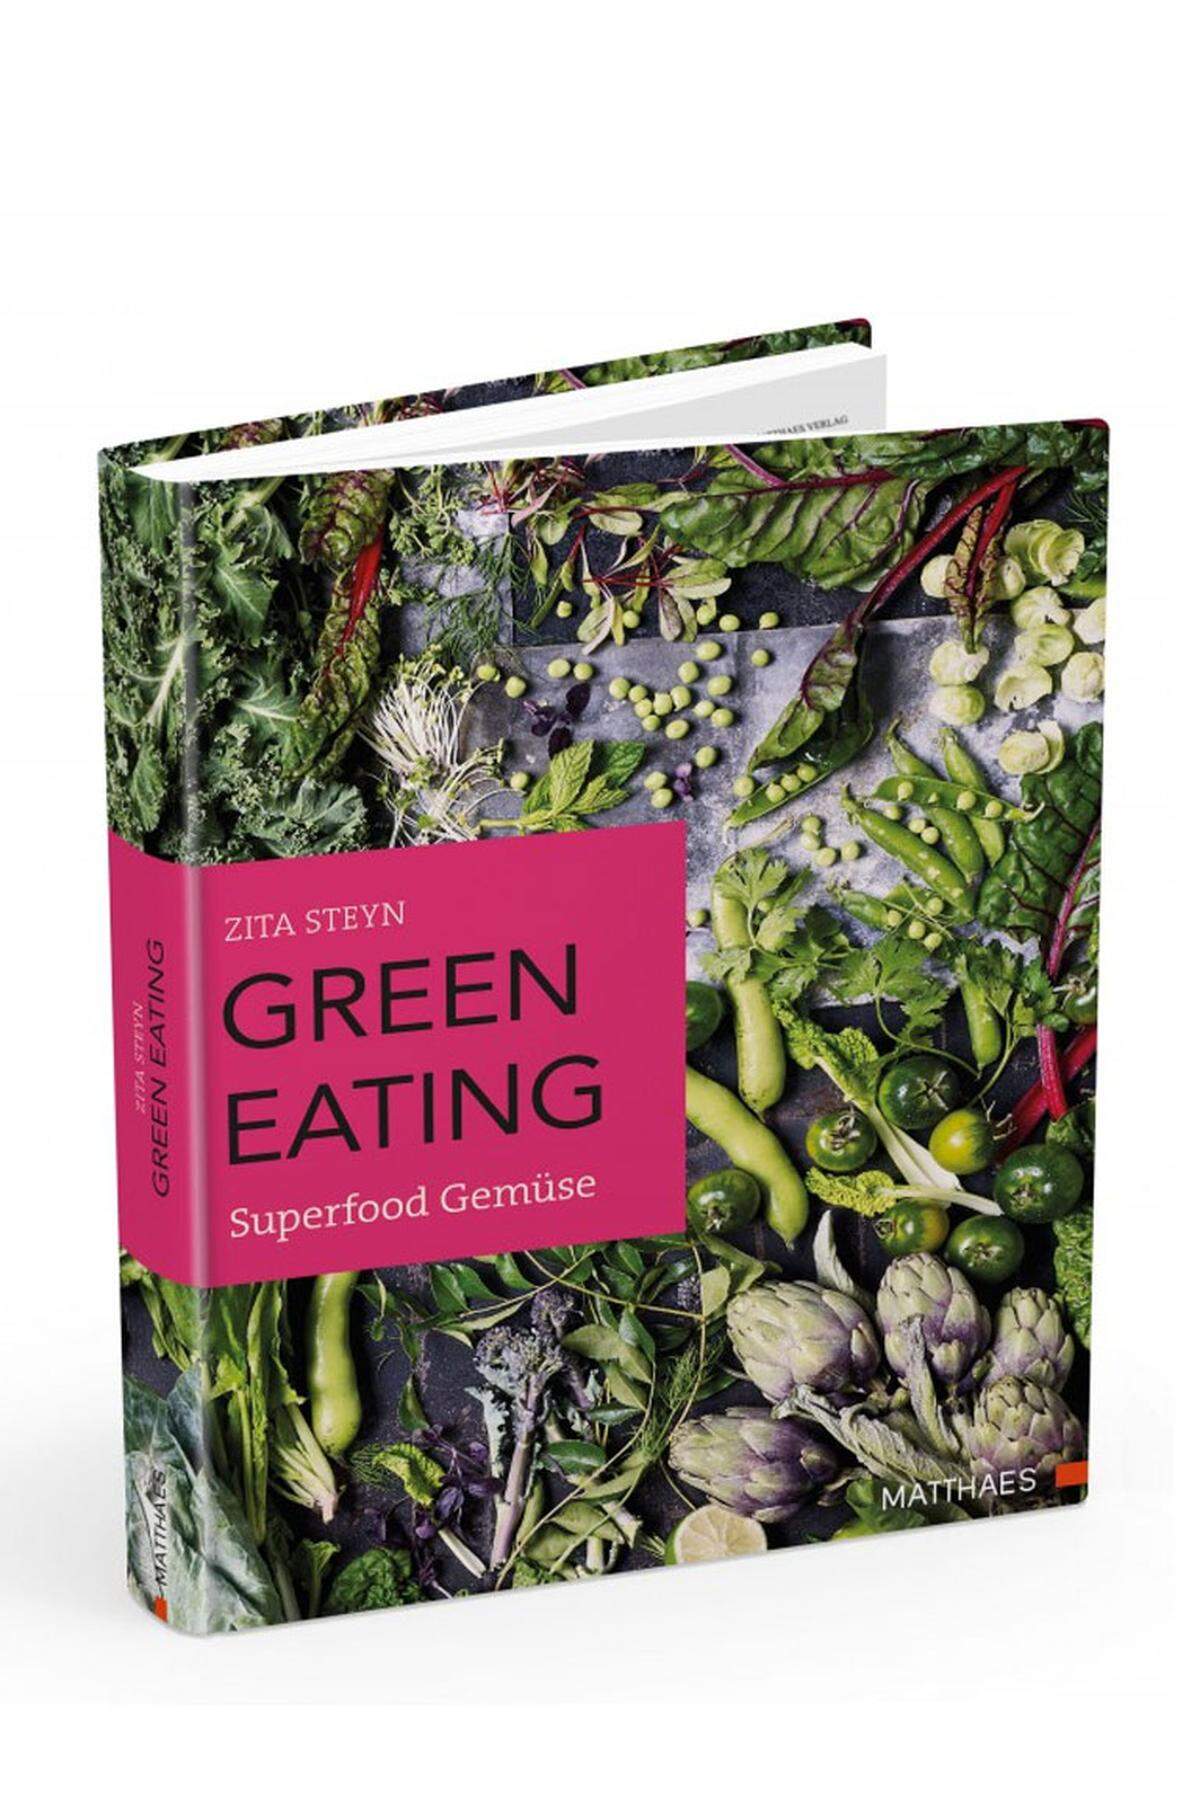 Wirklich interessante Gemüserezepte (auch mit Fleisch): Chicor e-Schalotten-Tarte-Tatin, Spinat-Sardinen-Nockerl, Süßkartoffel-Kokos-Kuchen. Zita Steyn: "Green Eating", Matthaes, 30,80 .